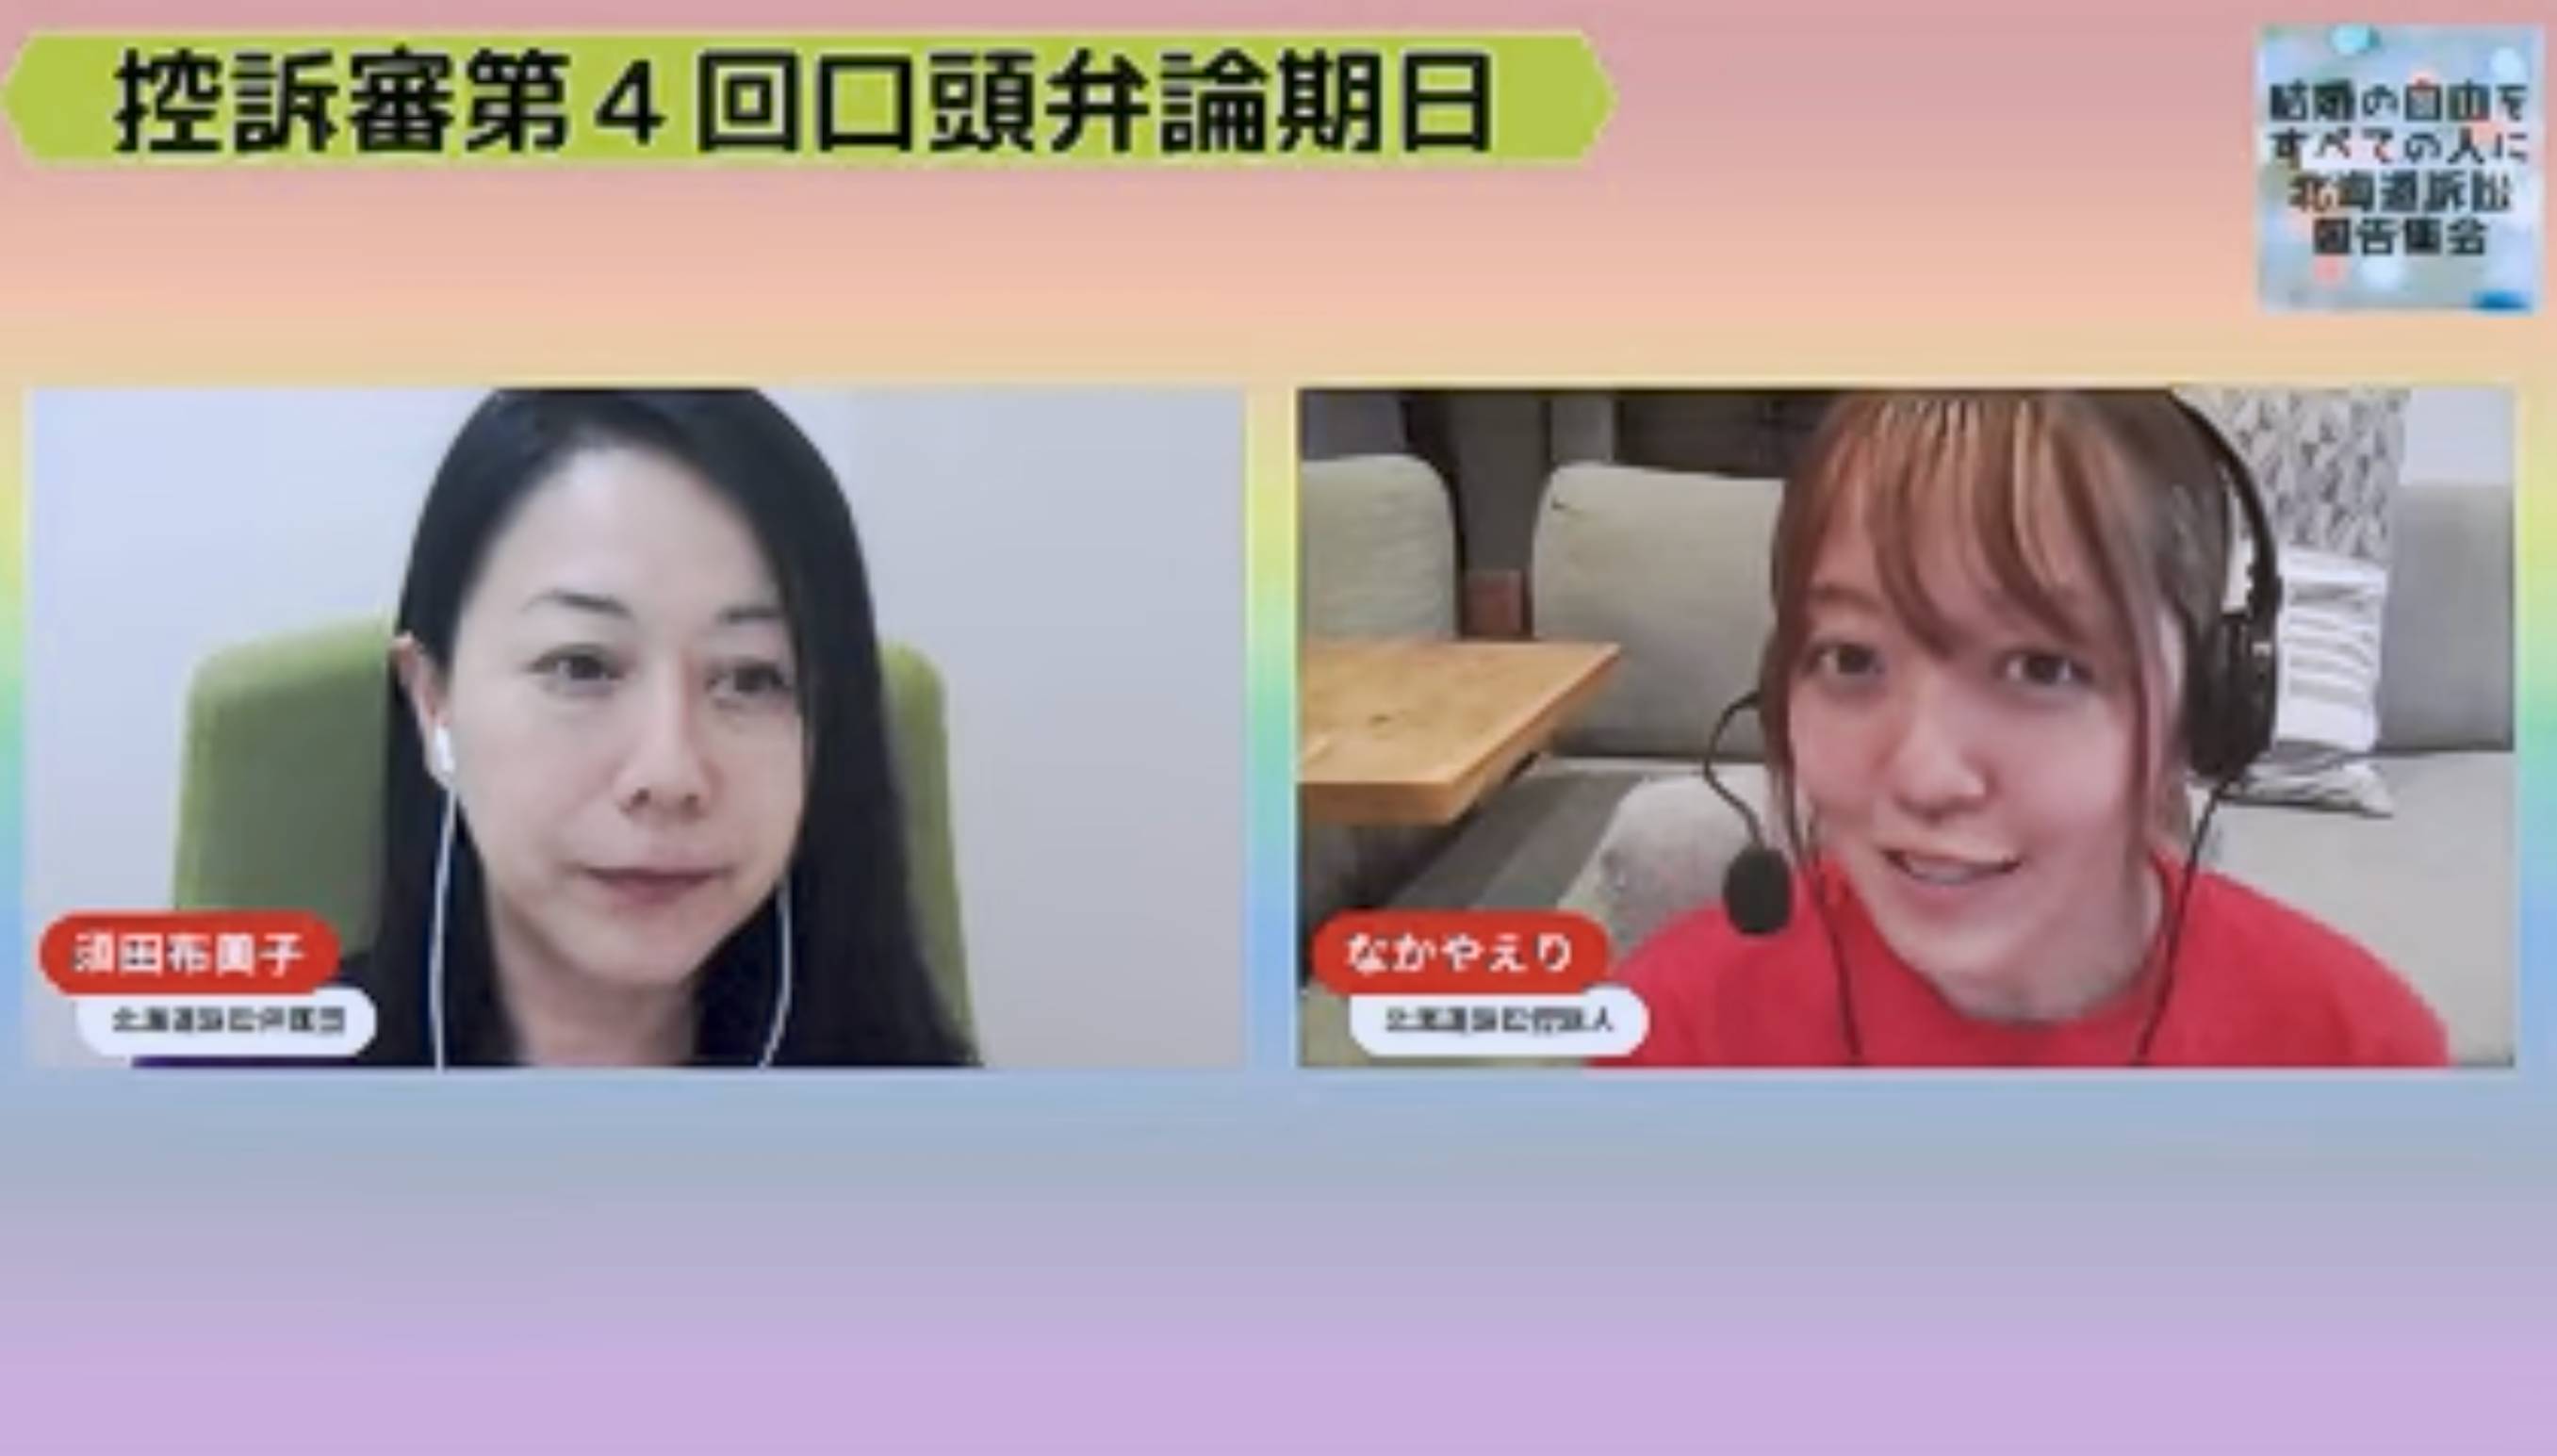 司会の須田布美子弁護士とインタビューを受ける控訴人の中谷衣里さんが写っている。